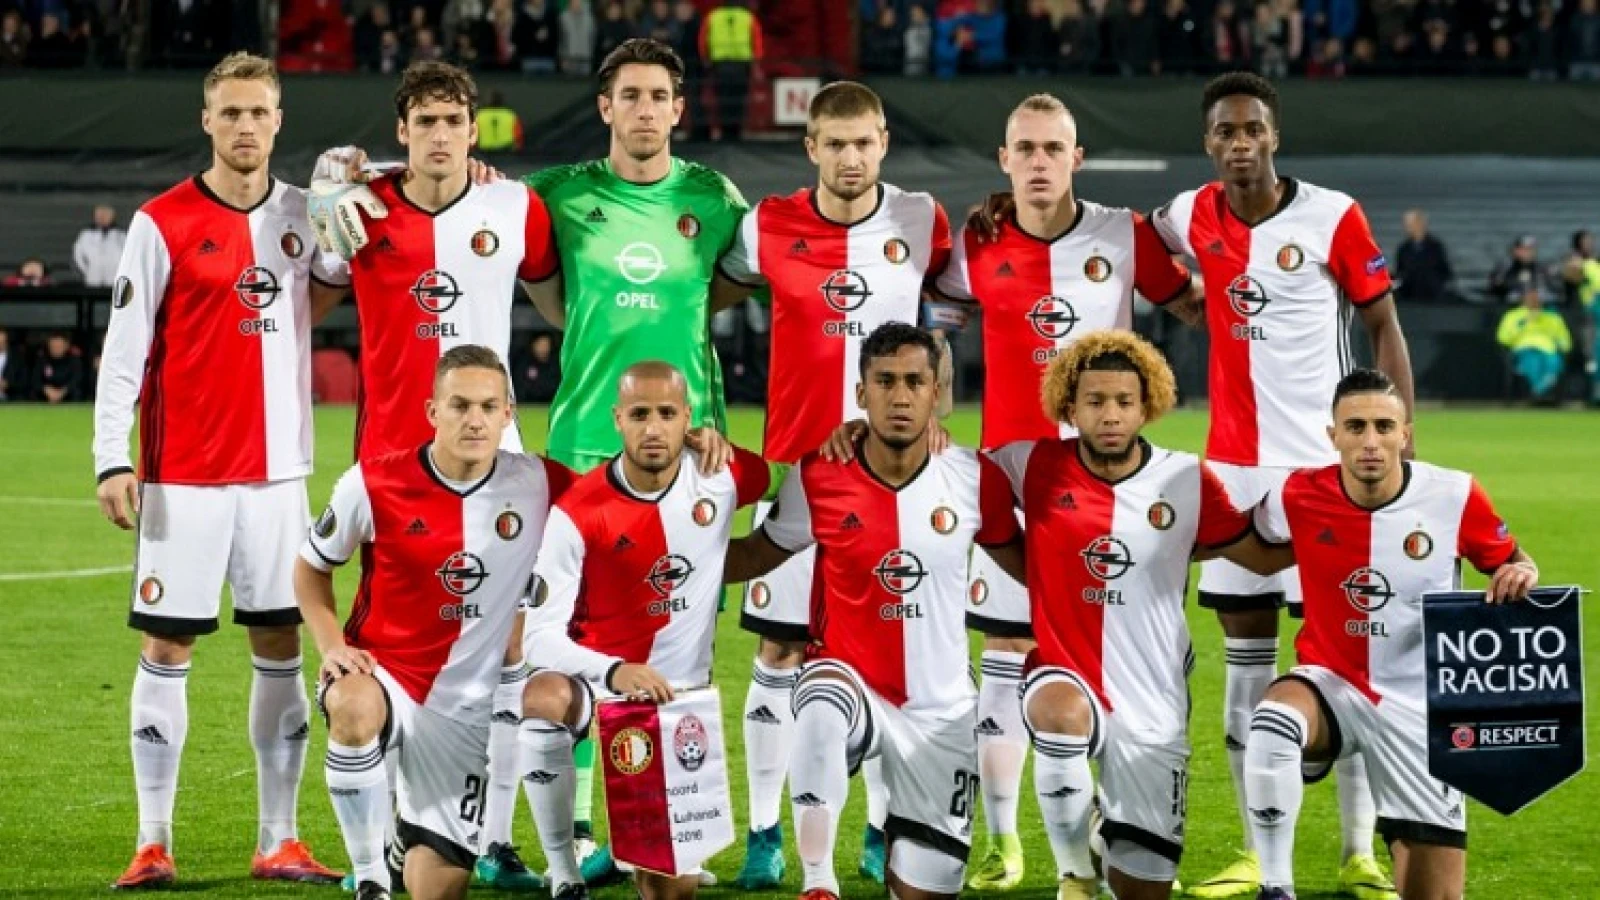 LIVE | Feyenoord - Zorya Luhansk 1-0 | Einde wedstrijd